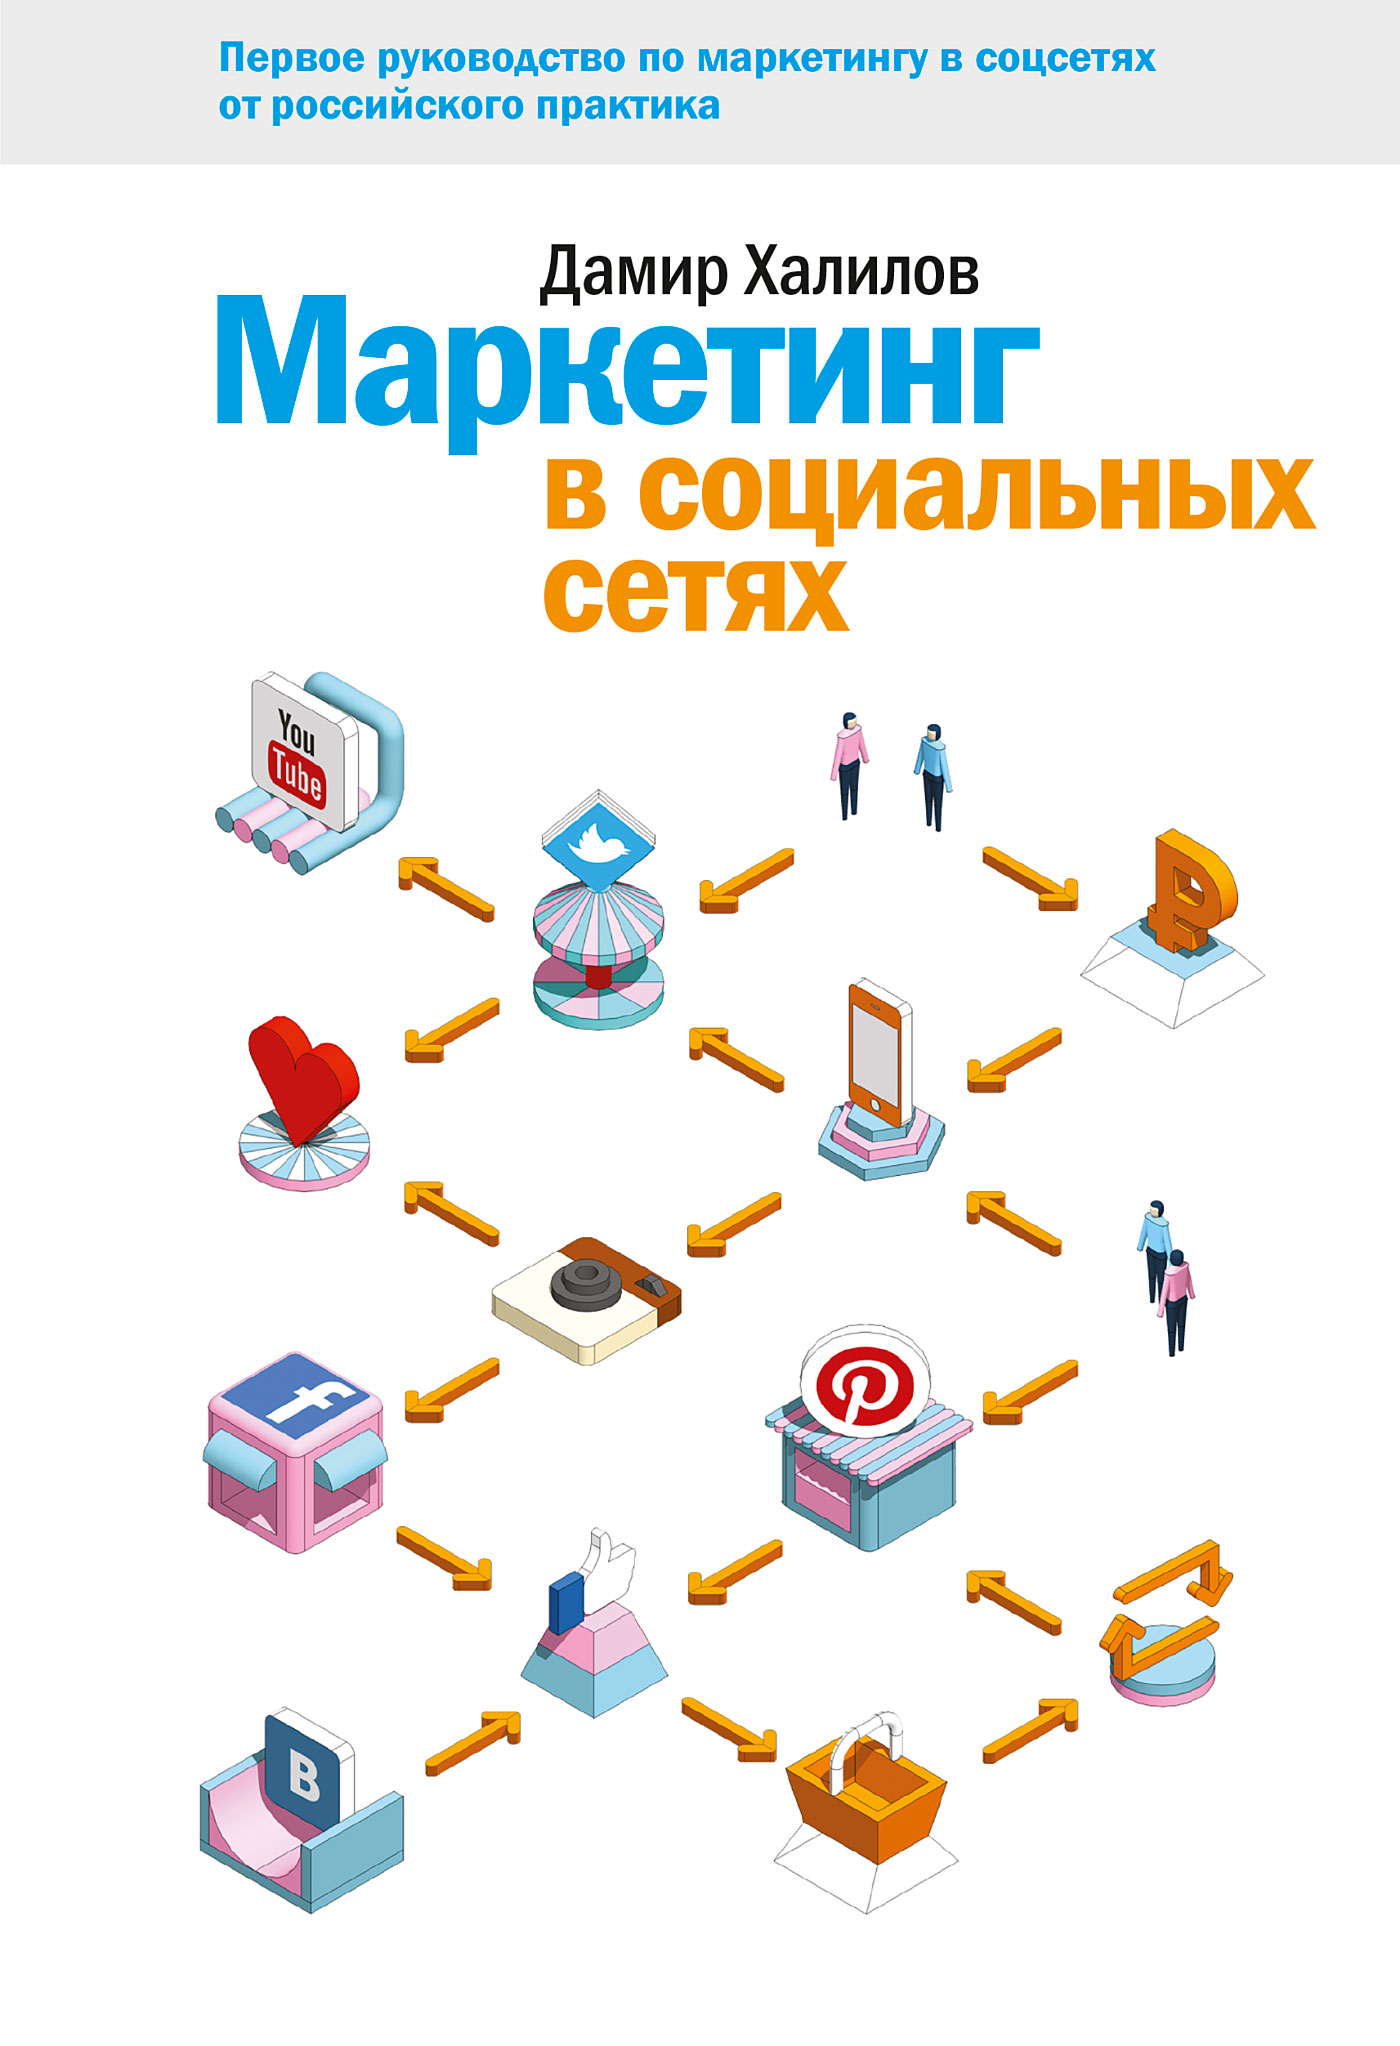 Книга Маркетинг в социальных сетях из серии , созданная Дамир Халилов, может относится к жанру Маркетинг, PR, реклама, Маркетинг, PR, реклама, Маркетинг, PR, реклама, Маркетинг, PR, реклама, Маркетинг, PR, реклама. Стоимость электронной книги Маркетинг в социальных сетях с идентификатором 5978005 составляет 399.00 руб.